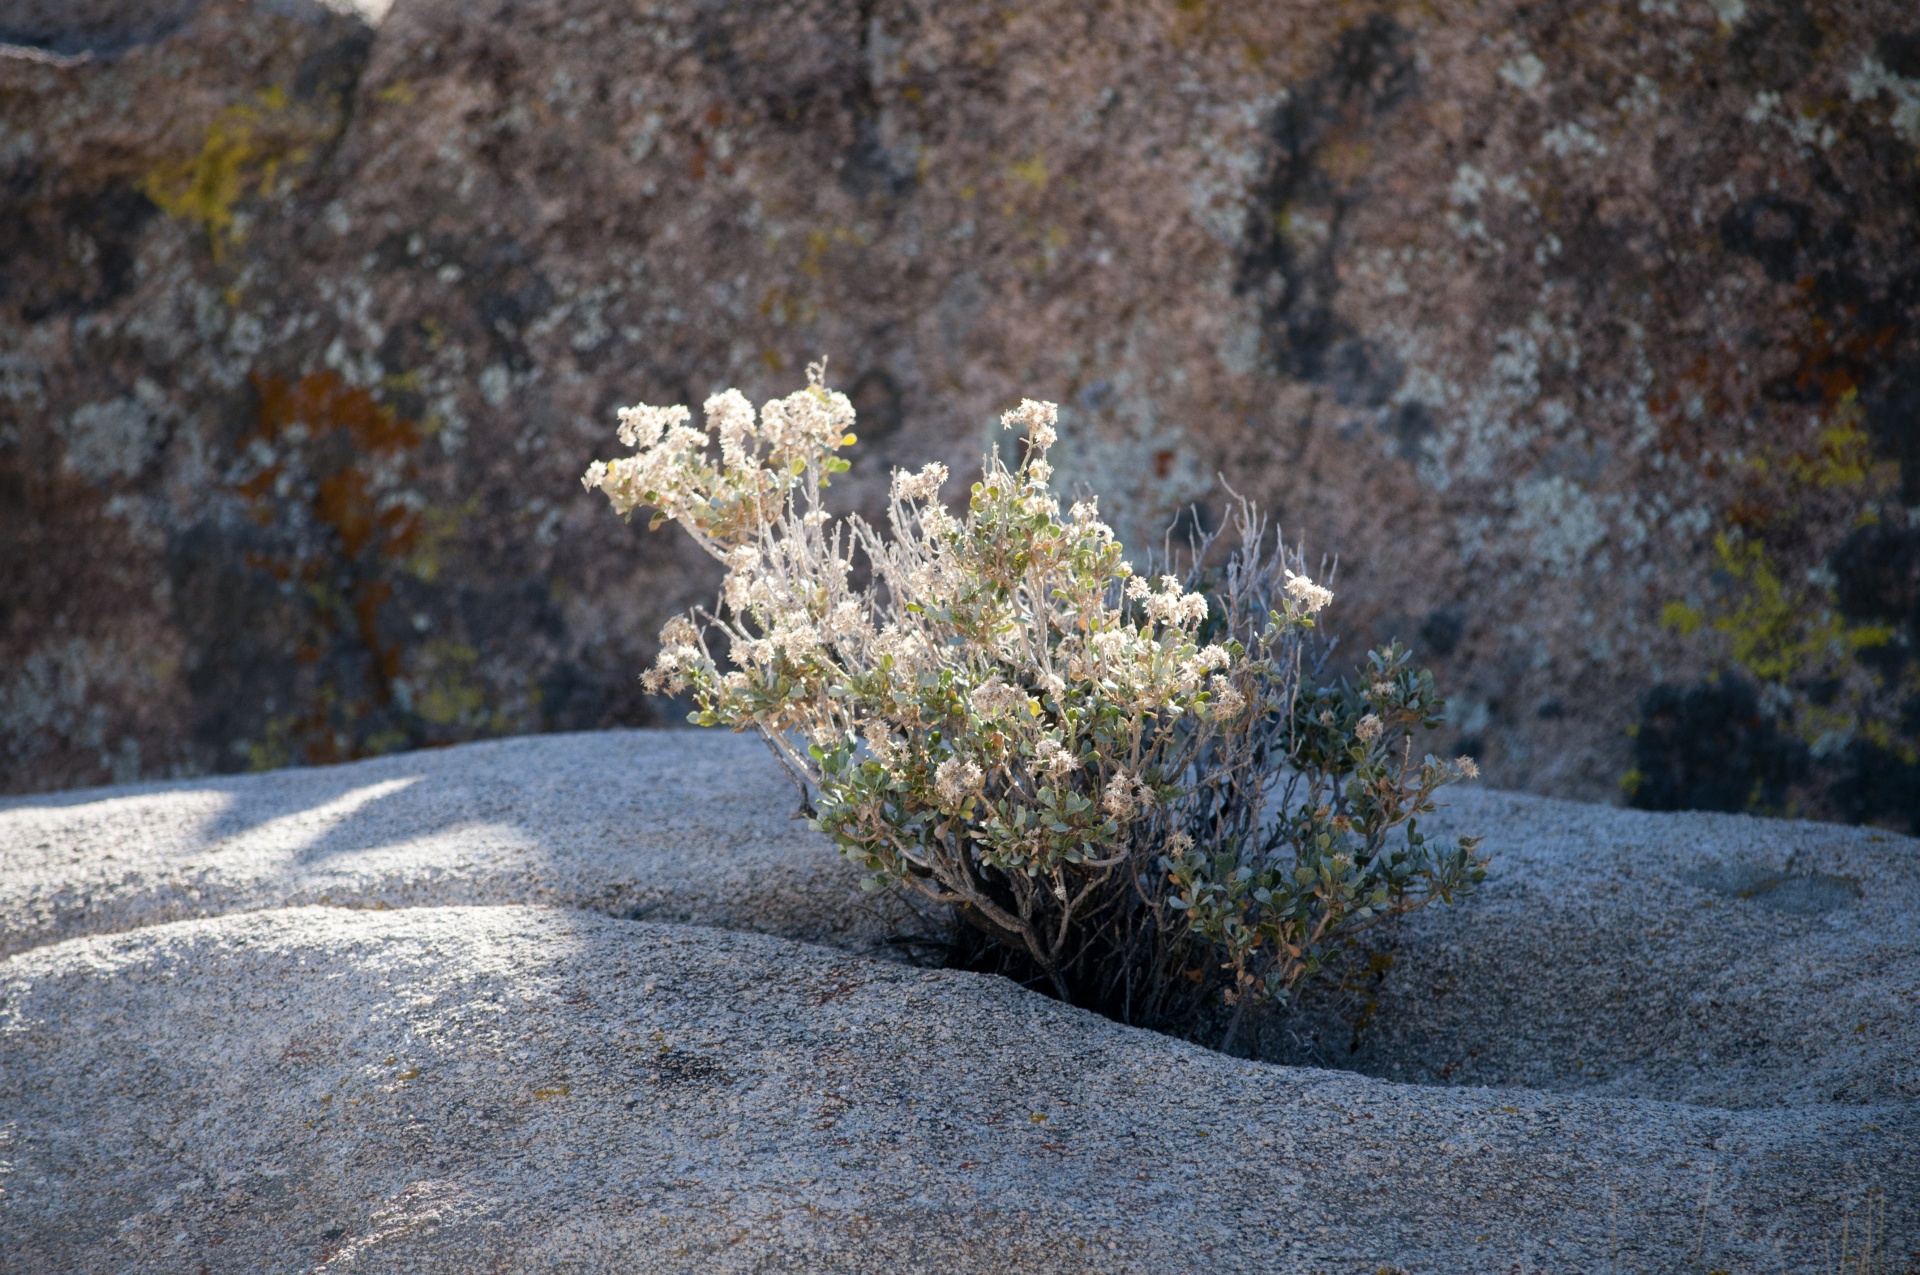 bush of flowers growing in desert rocks